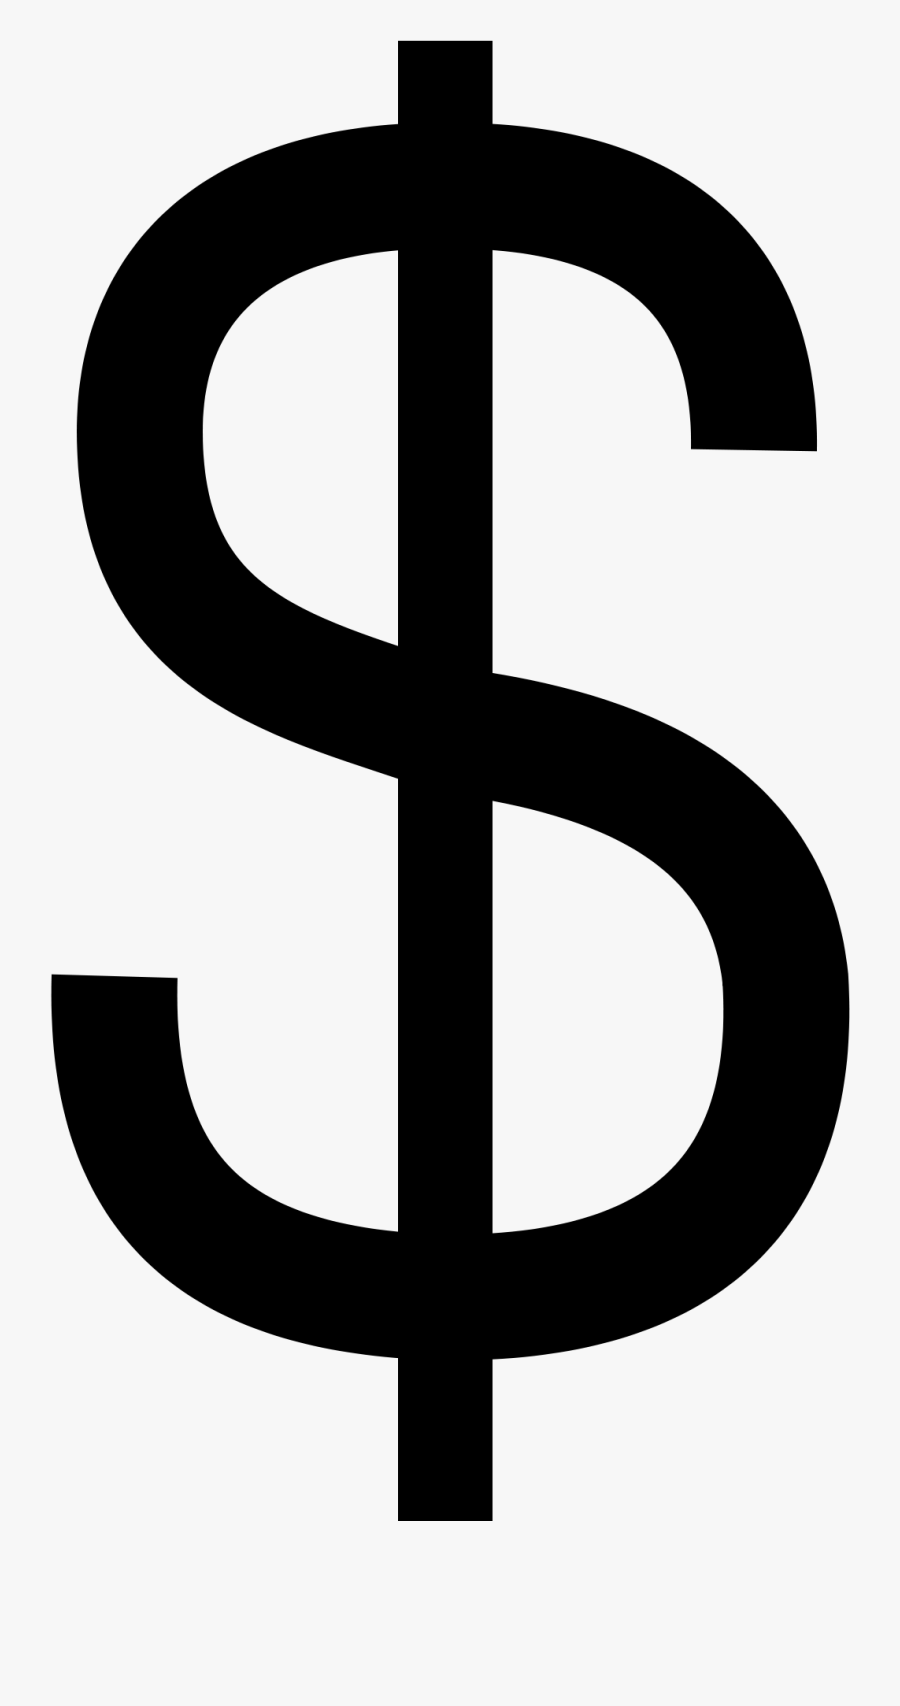 File - Dollar Sign - Svg - Dollar Svg, Transparent Clipart